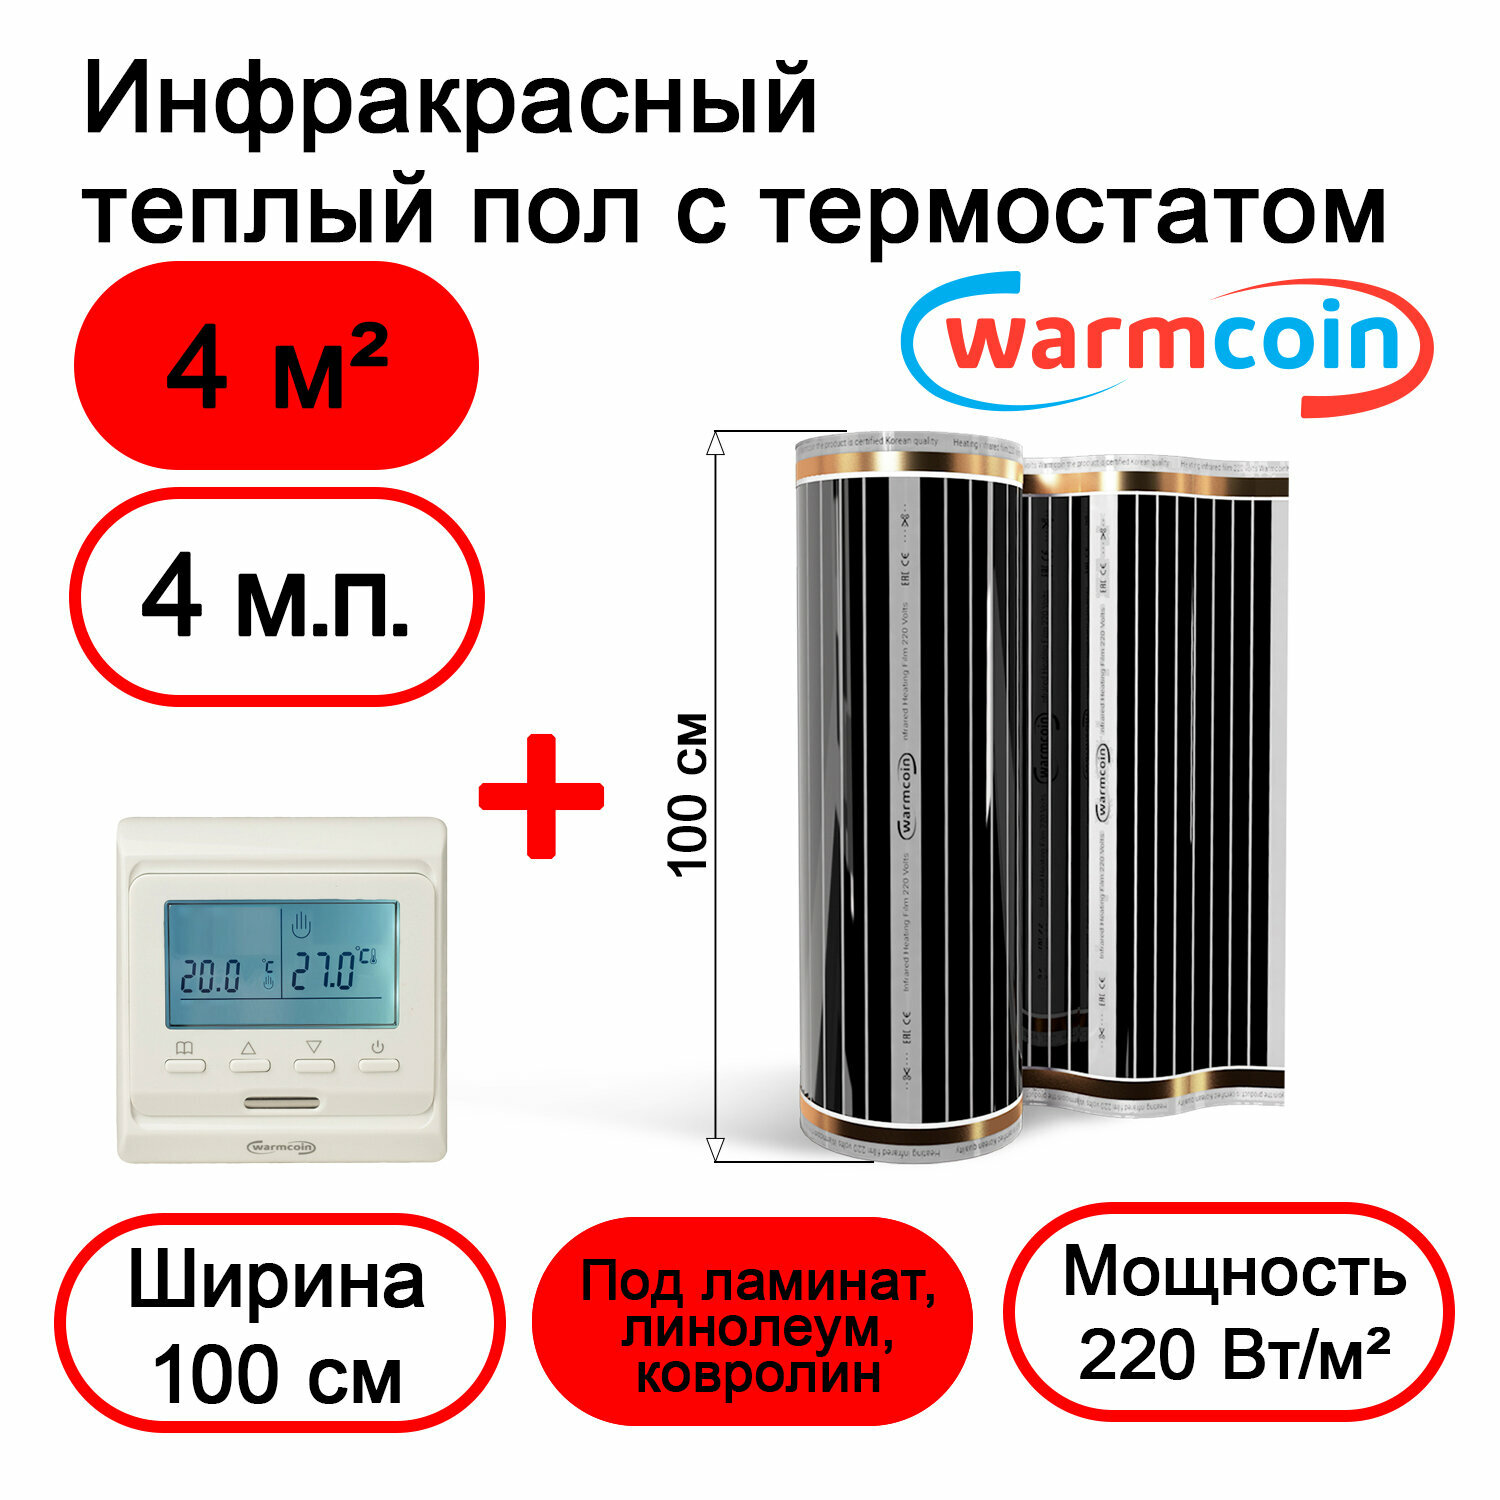 Теплый пол Warmcoin инфракрасный 100 см, 220 Вт/м.кв. с электронным терморегулятором, 4 м.п